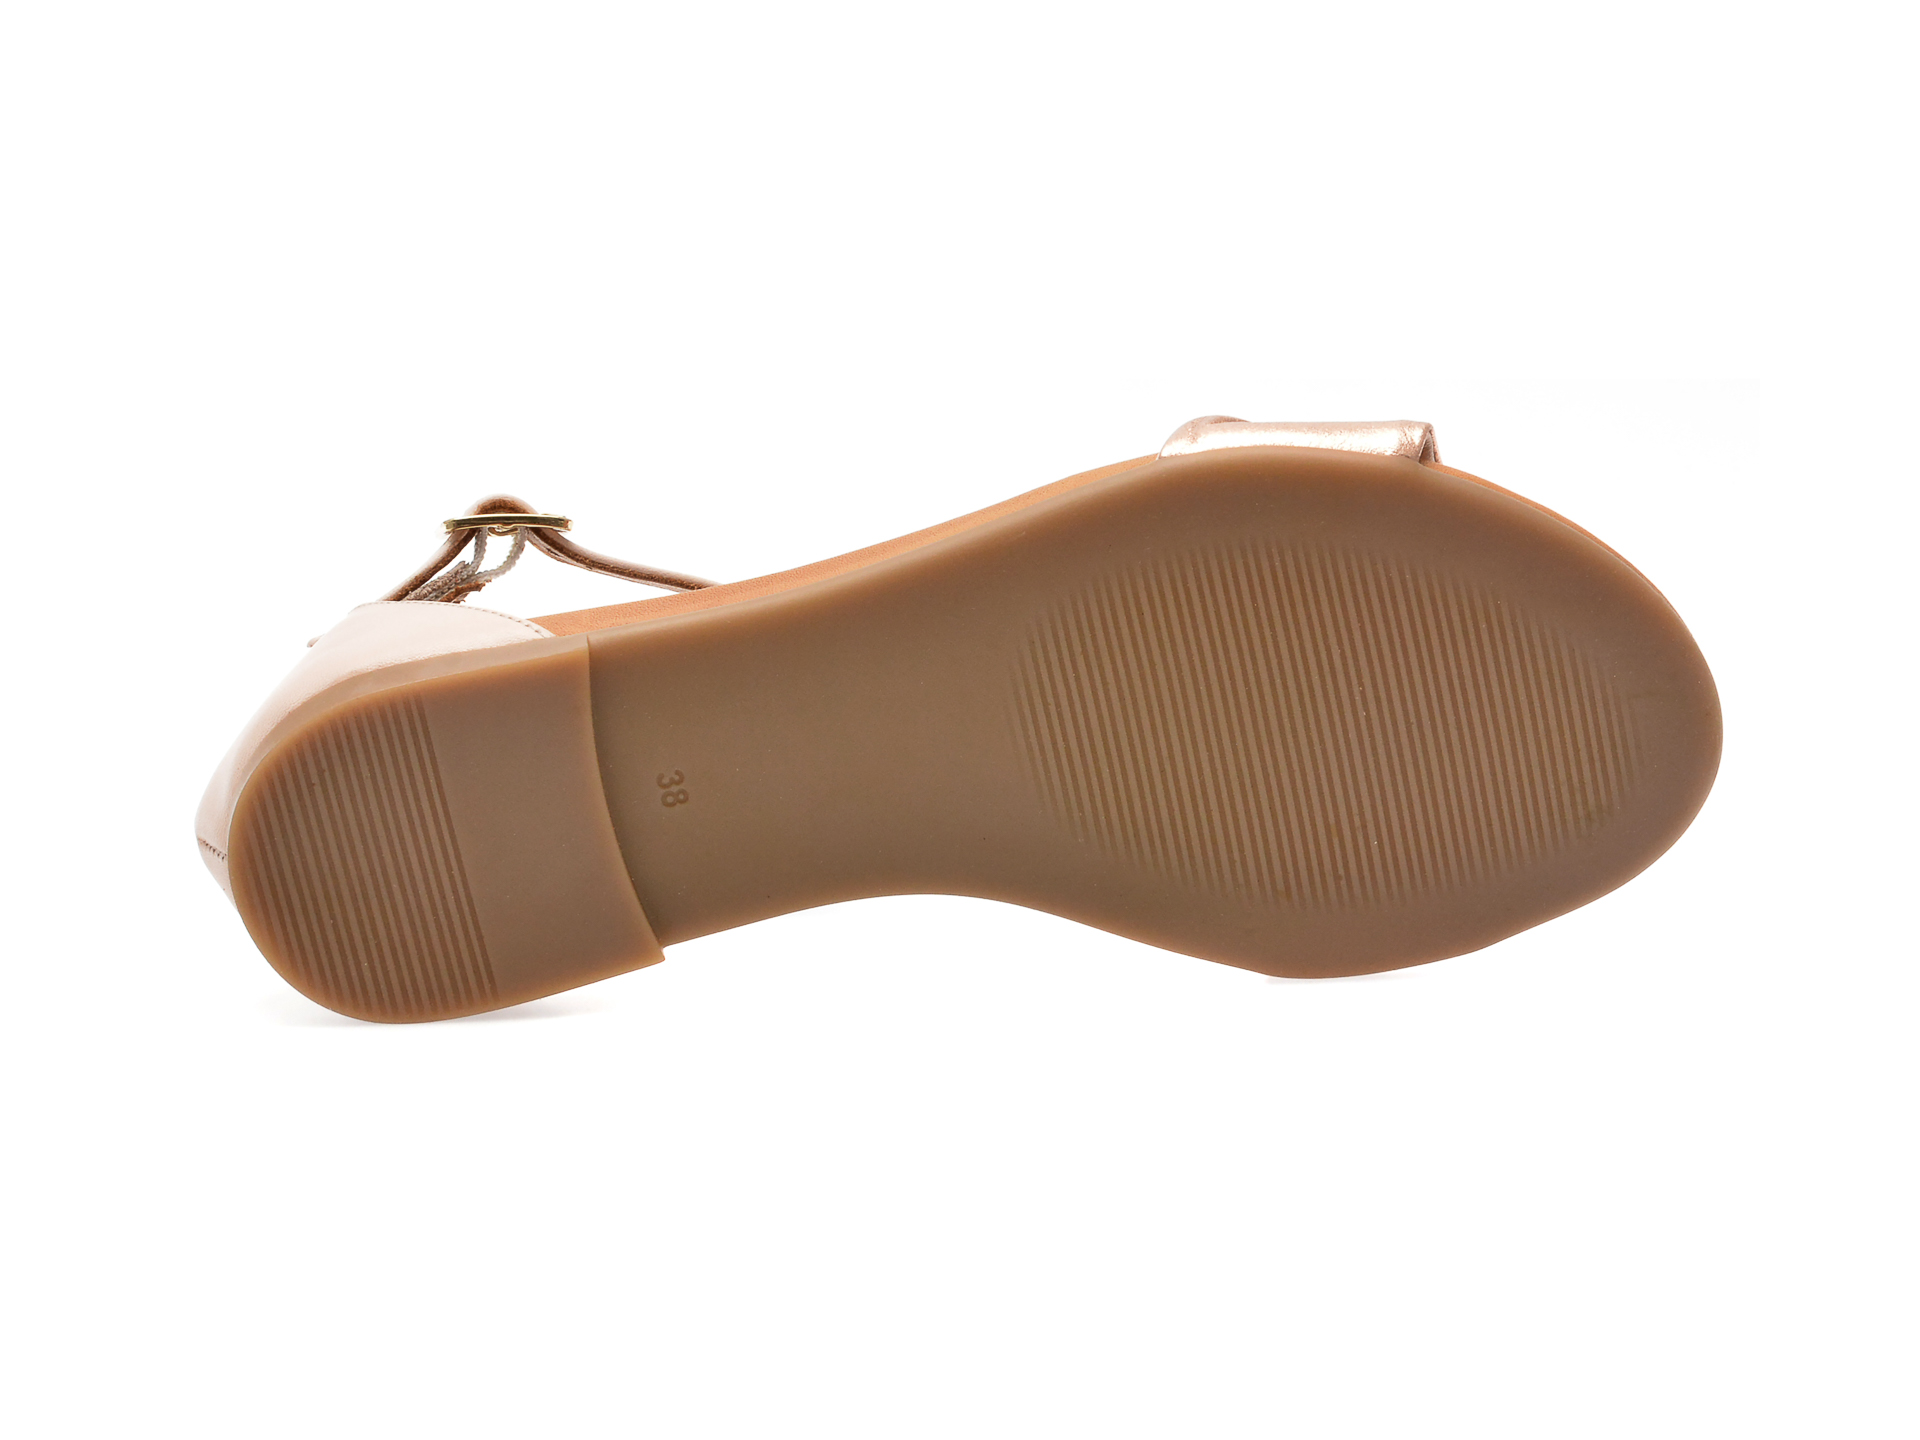 Sandale SHERLOCK SOON nude, 20764, din piele naturala